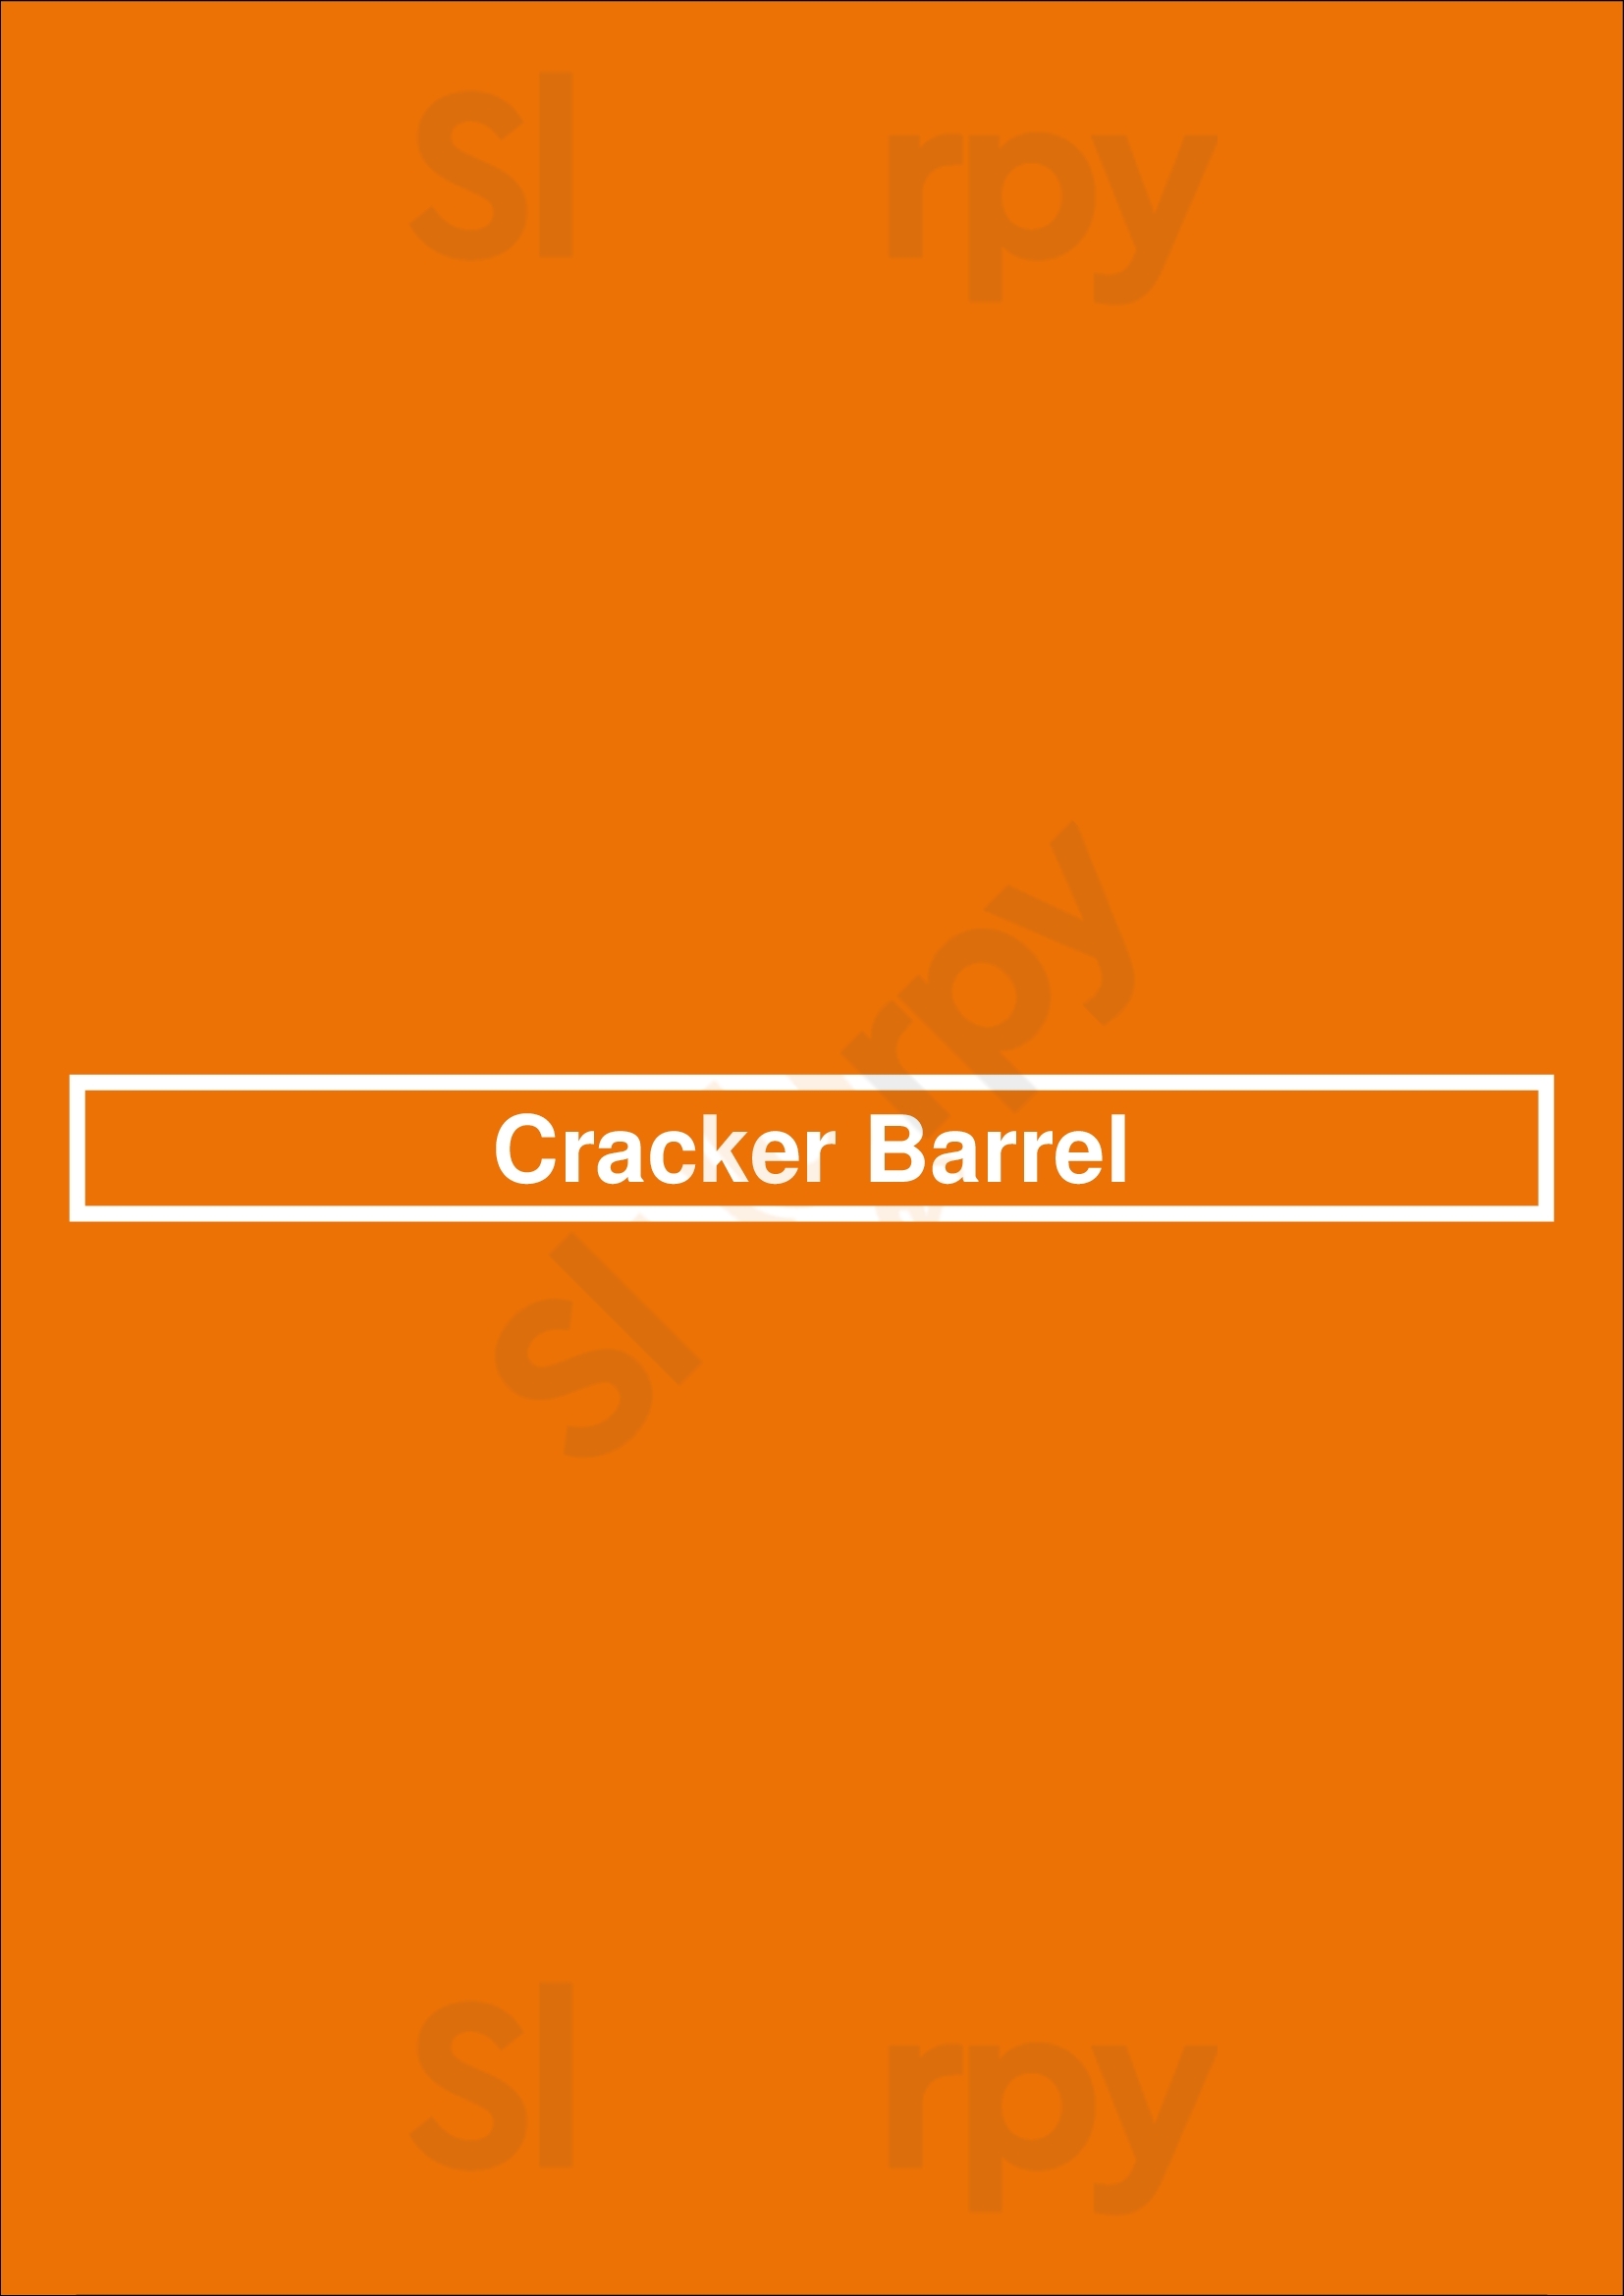 Cracker Barrel Independence Menu - 1